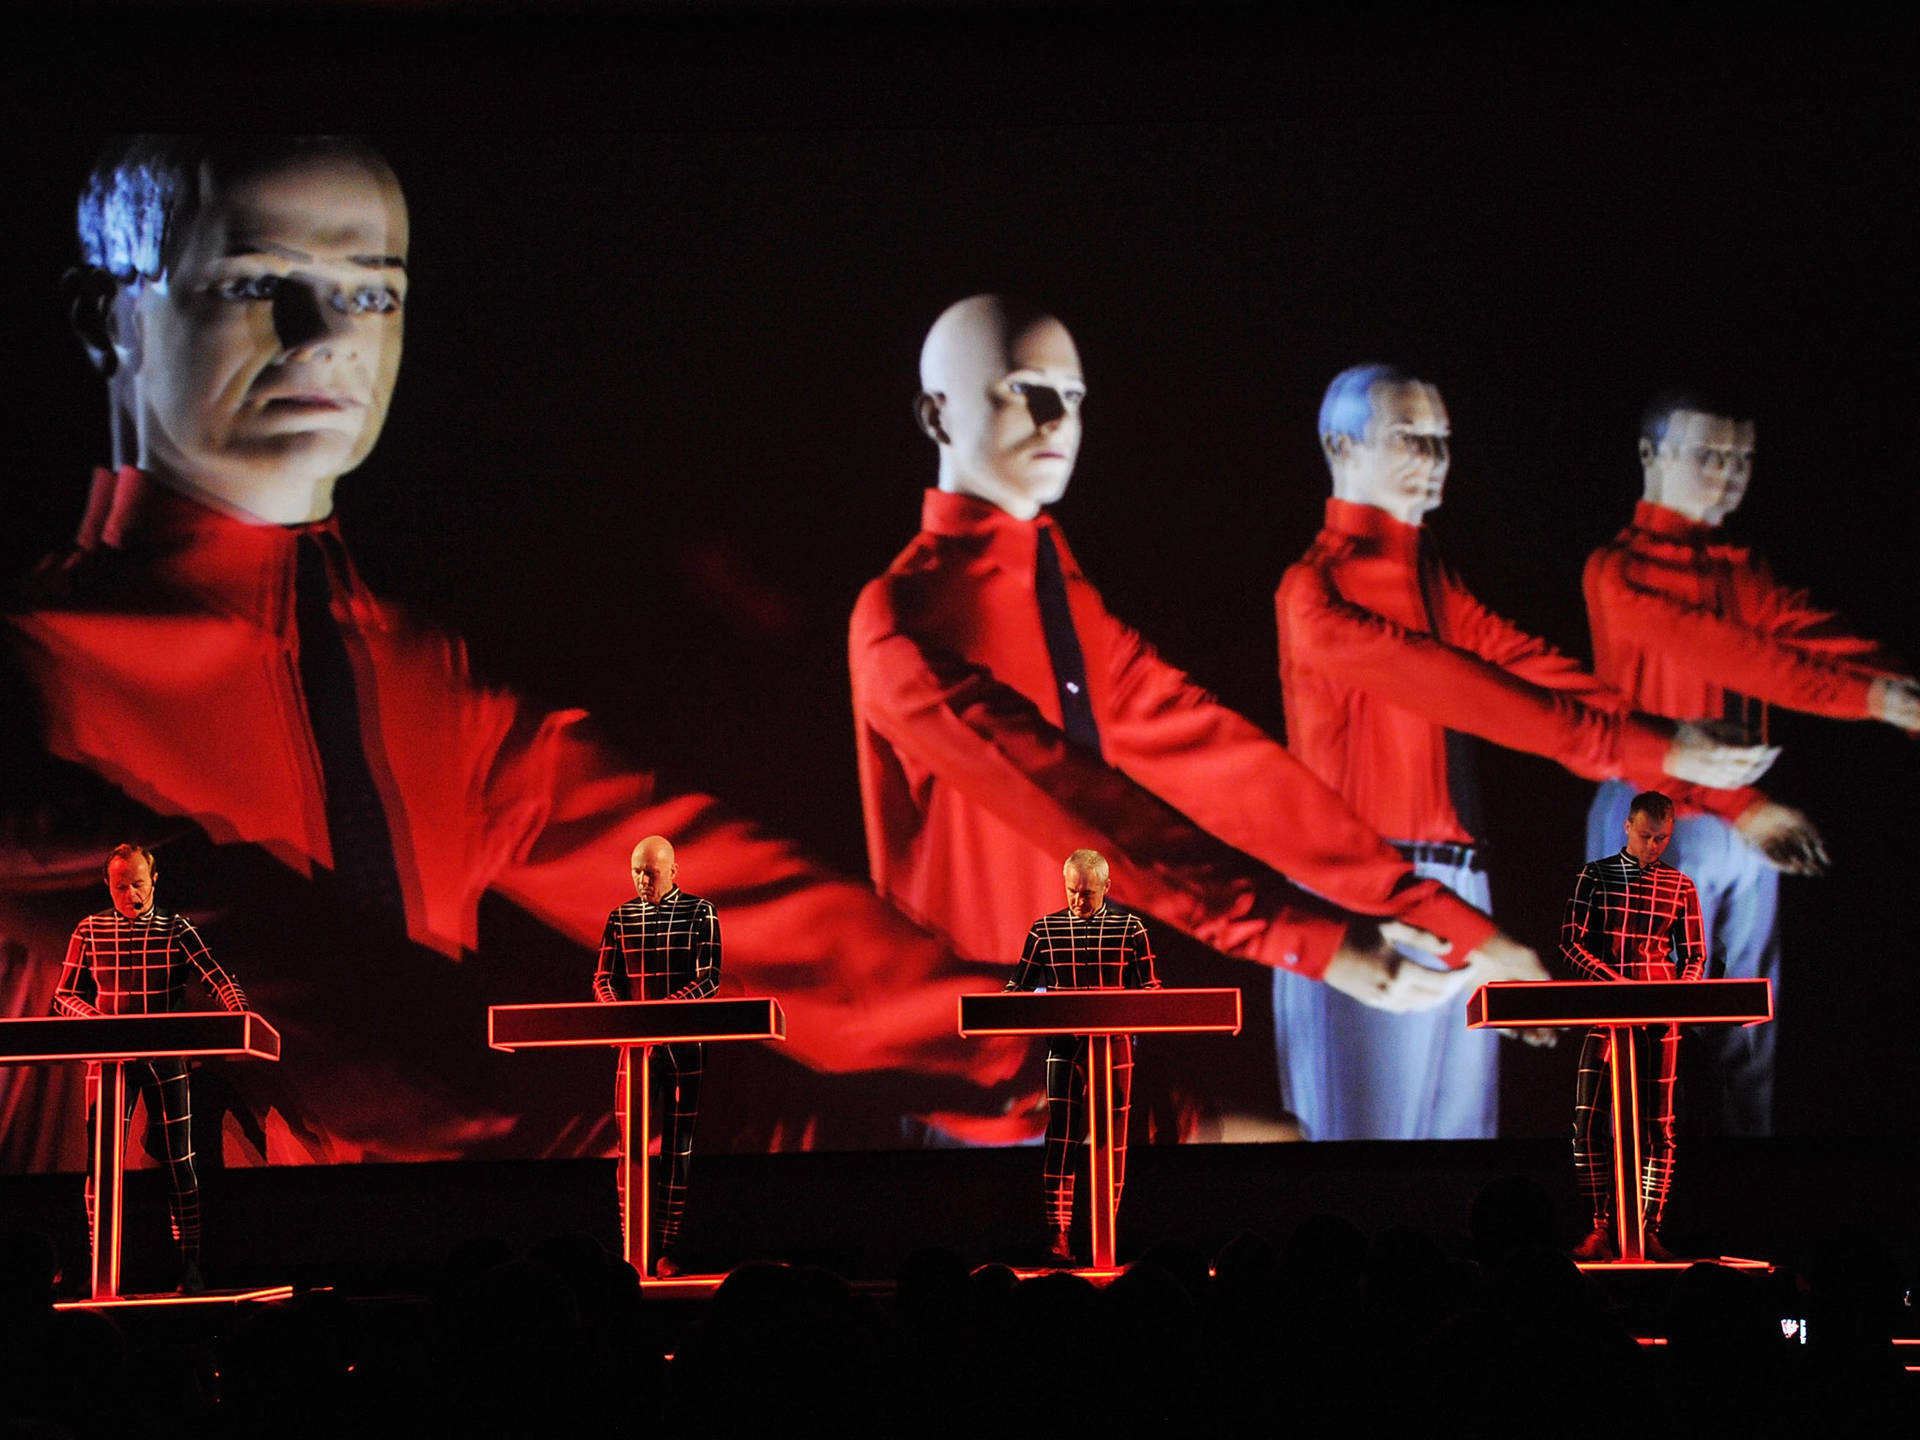 Kraftwerk Live Performance Mannequin Clones Wallpaper